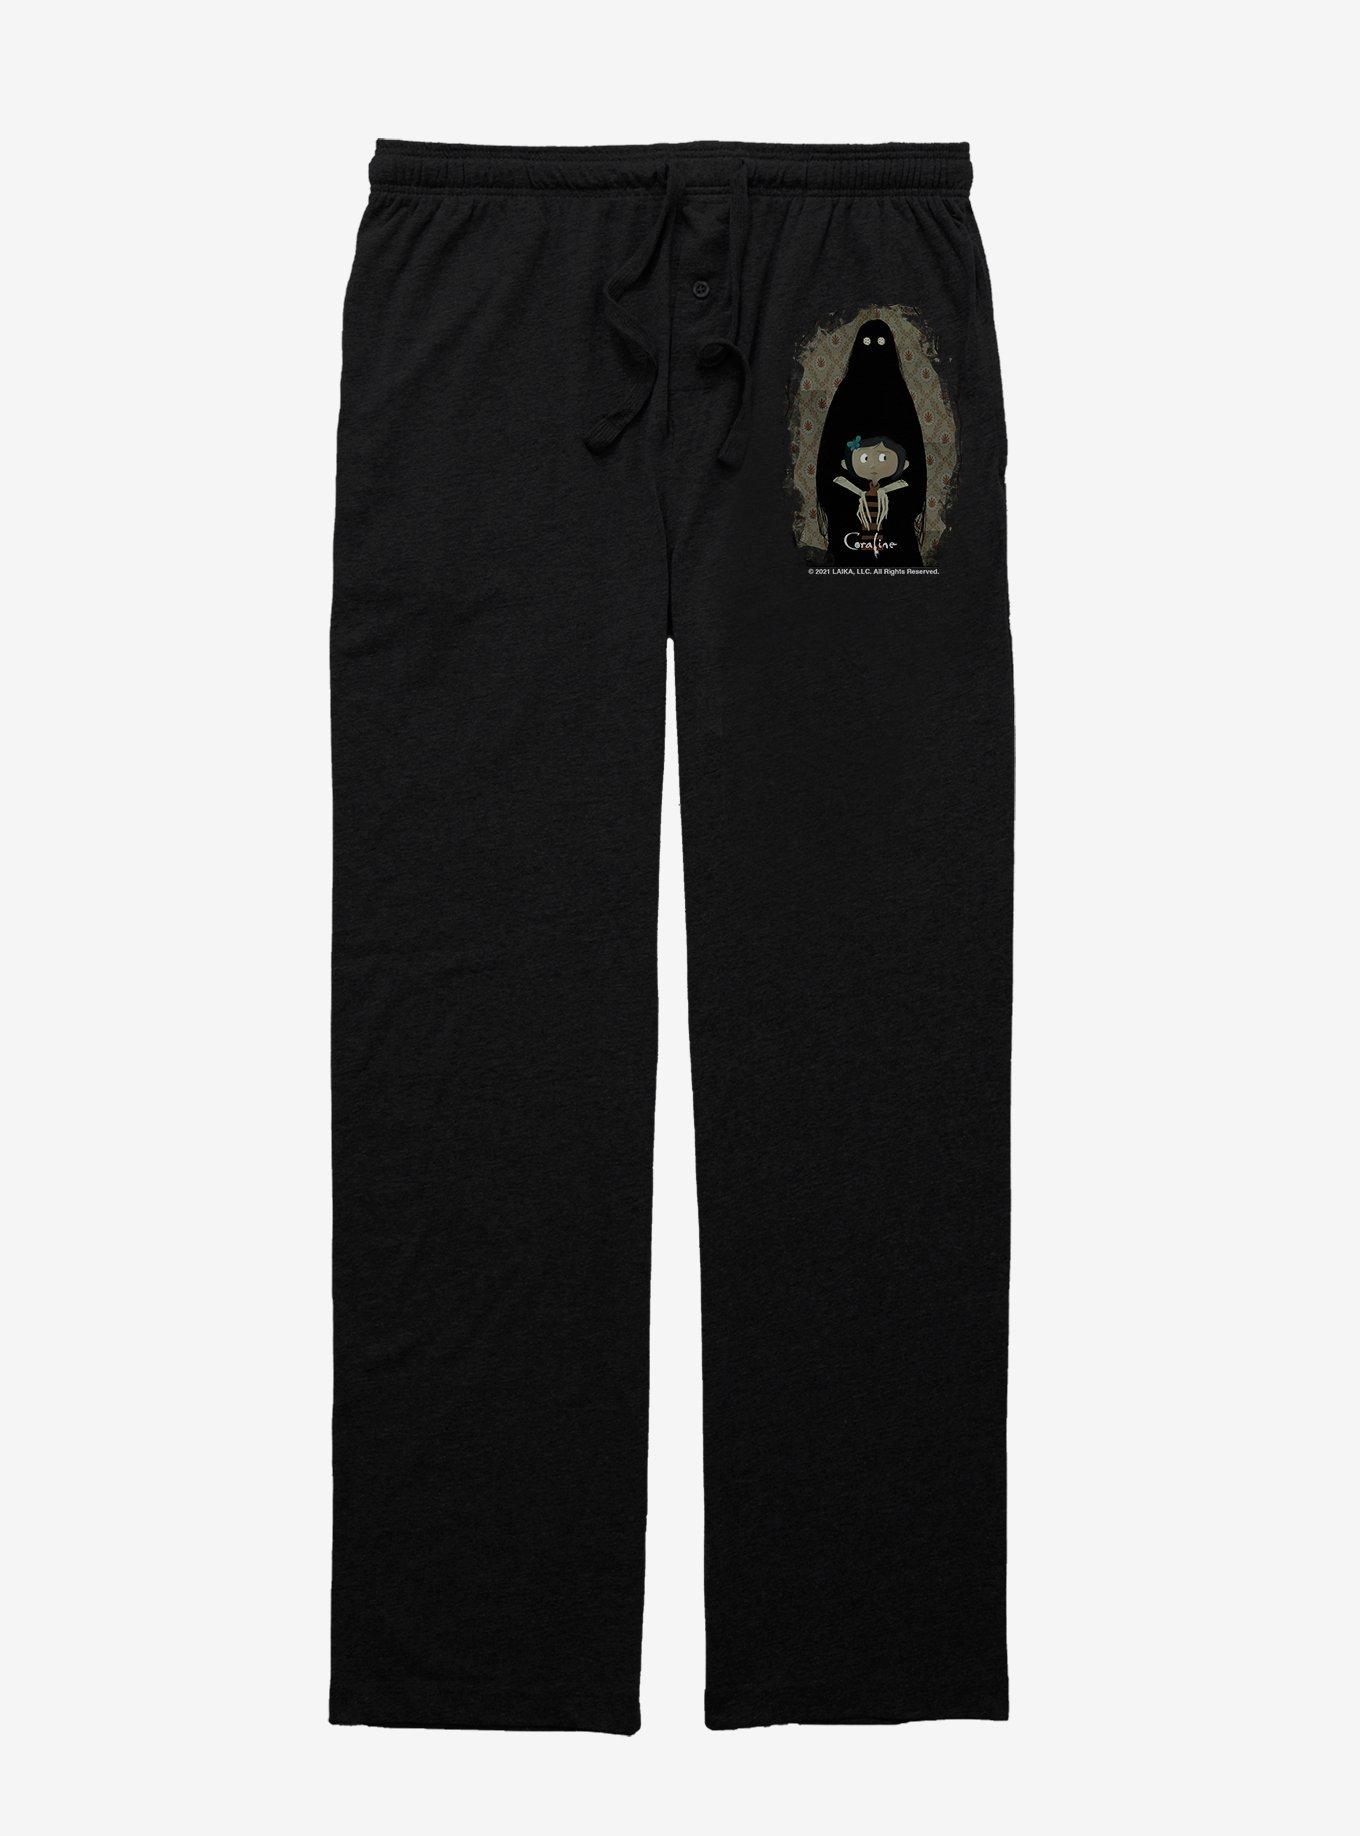 Coraline Ghost Shadow Pajama Pants, BLACK, hi-res